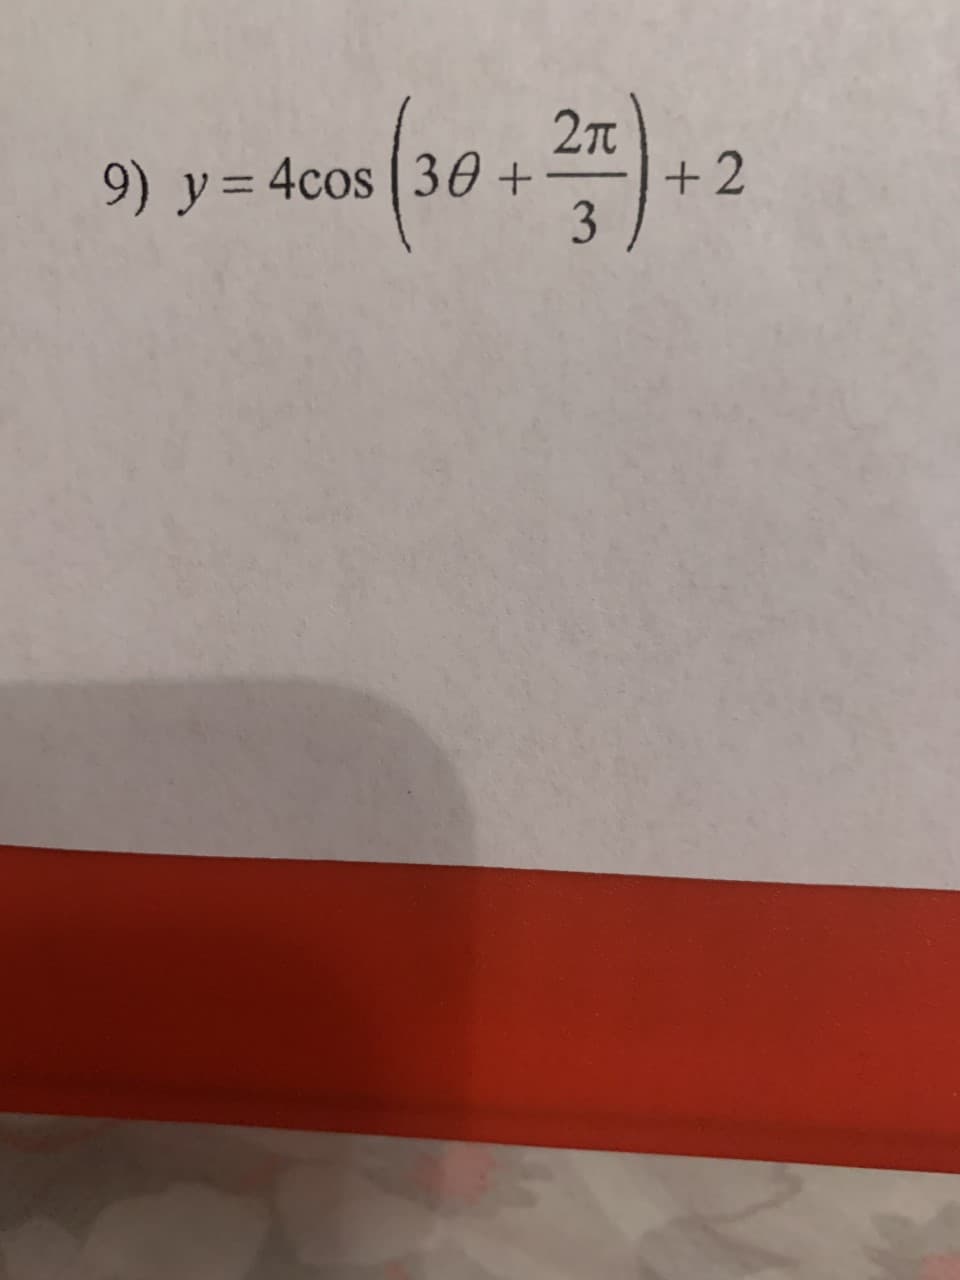 2T
9) y= 4cos ( 30 +
+2
3
